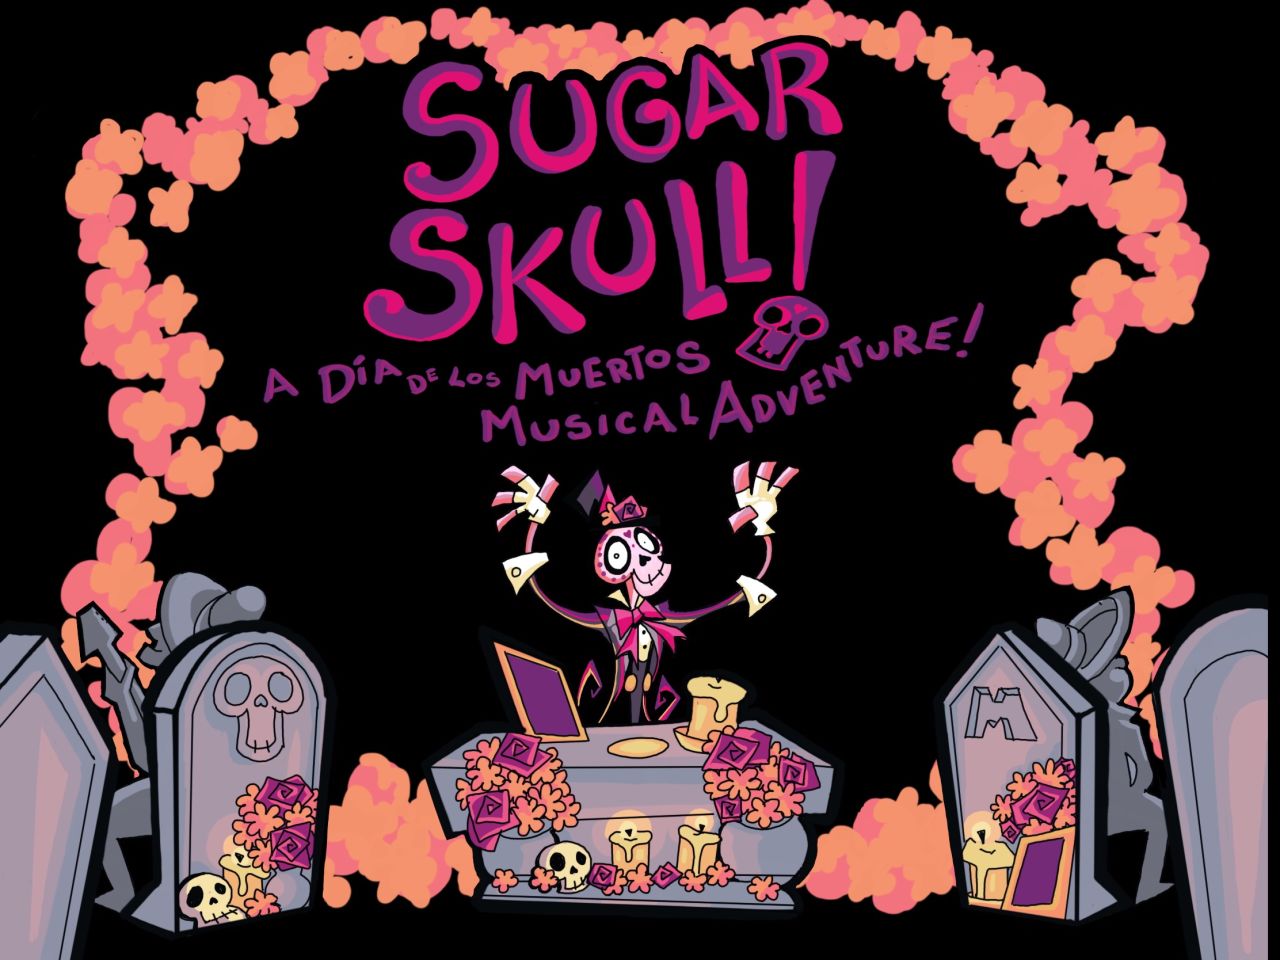 SUGAR SKULL! A Dia de Los Muertos Musical Adventure